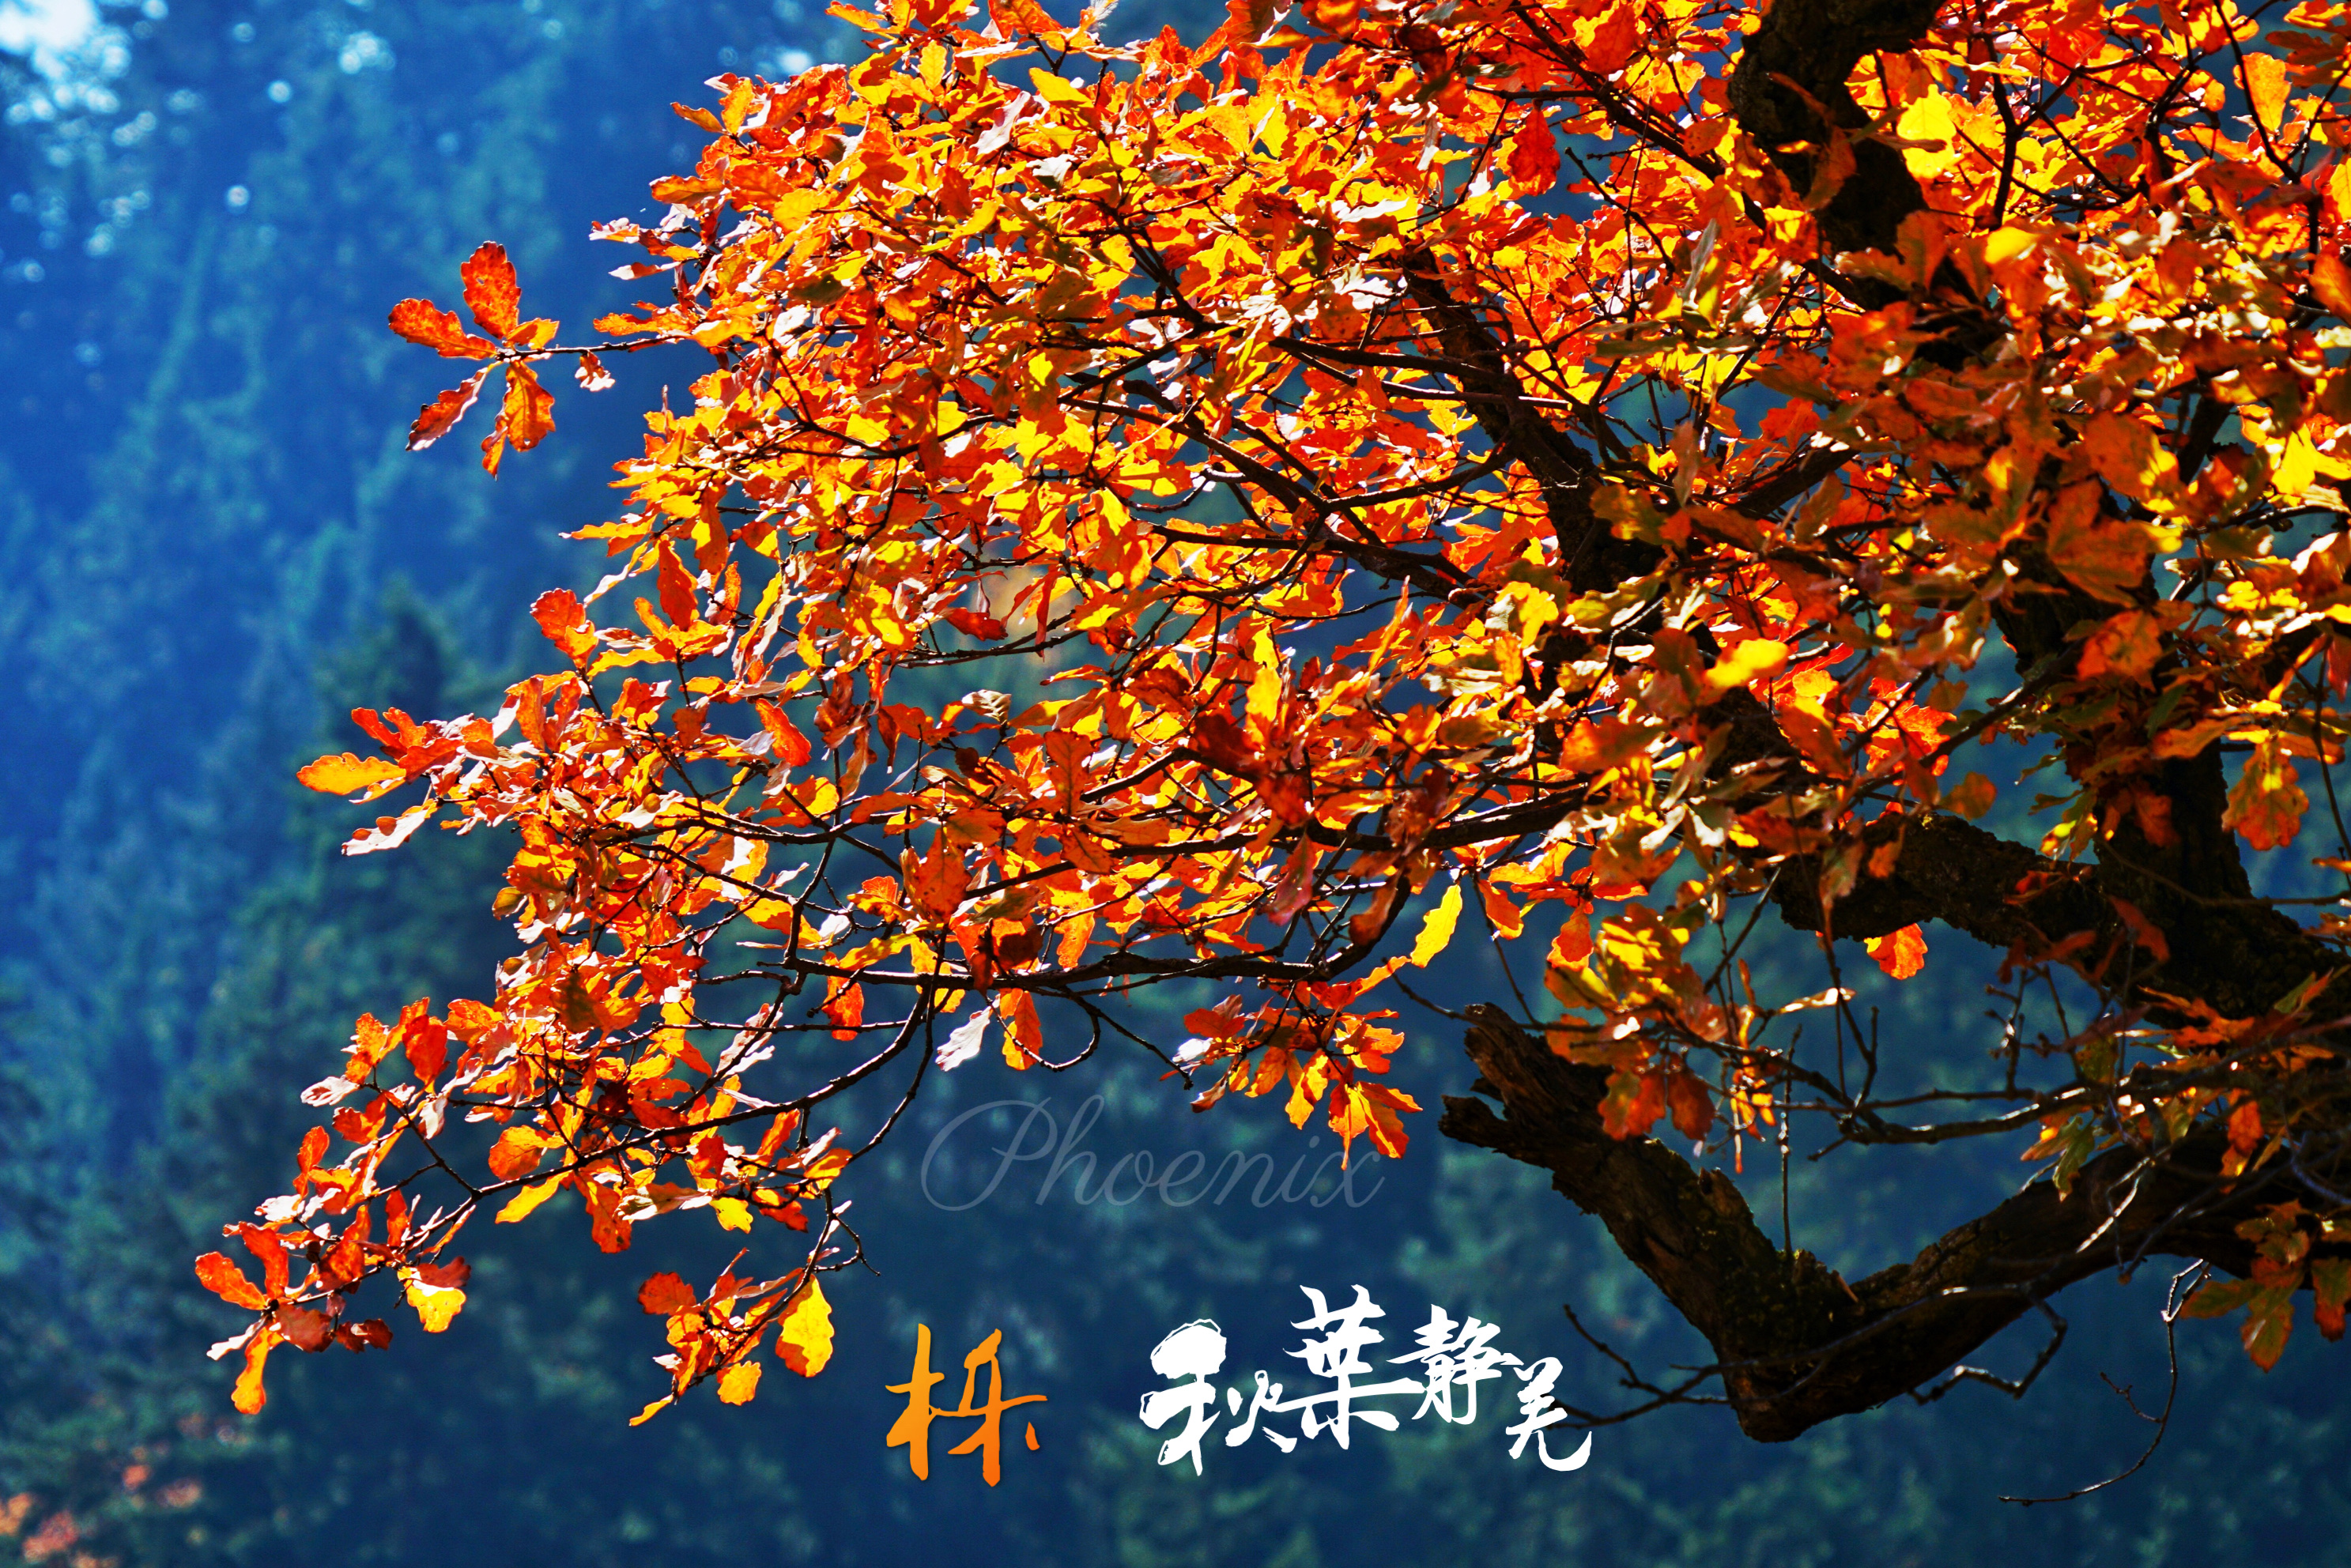 栎有两个读音 lì yuè 分布于亚,非,欧,美4洲 中国有51种